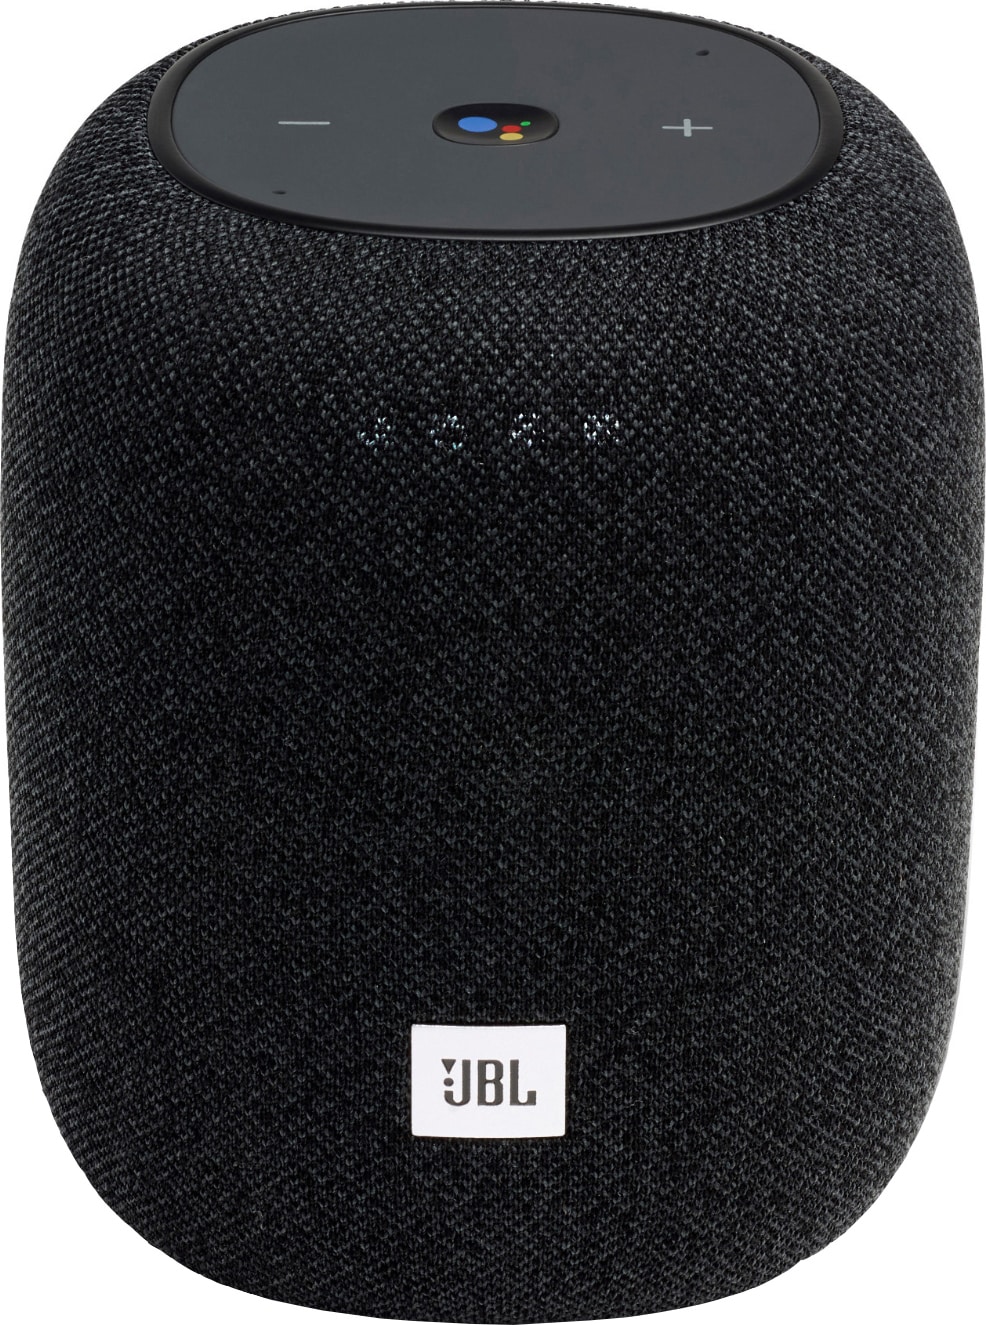 JBL Link Music trådløs høyttaler (sort) - Smarthøyttaler - Elkjøp